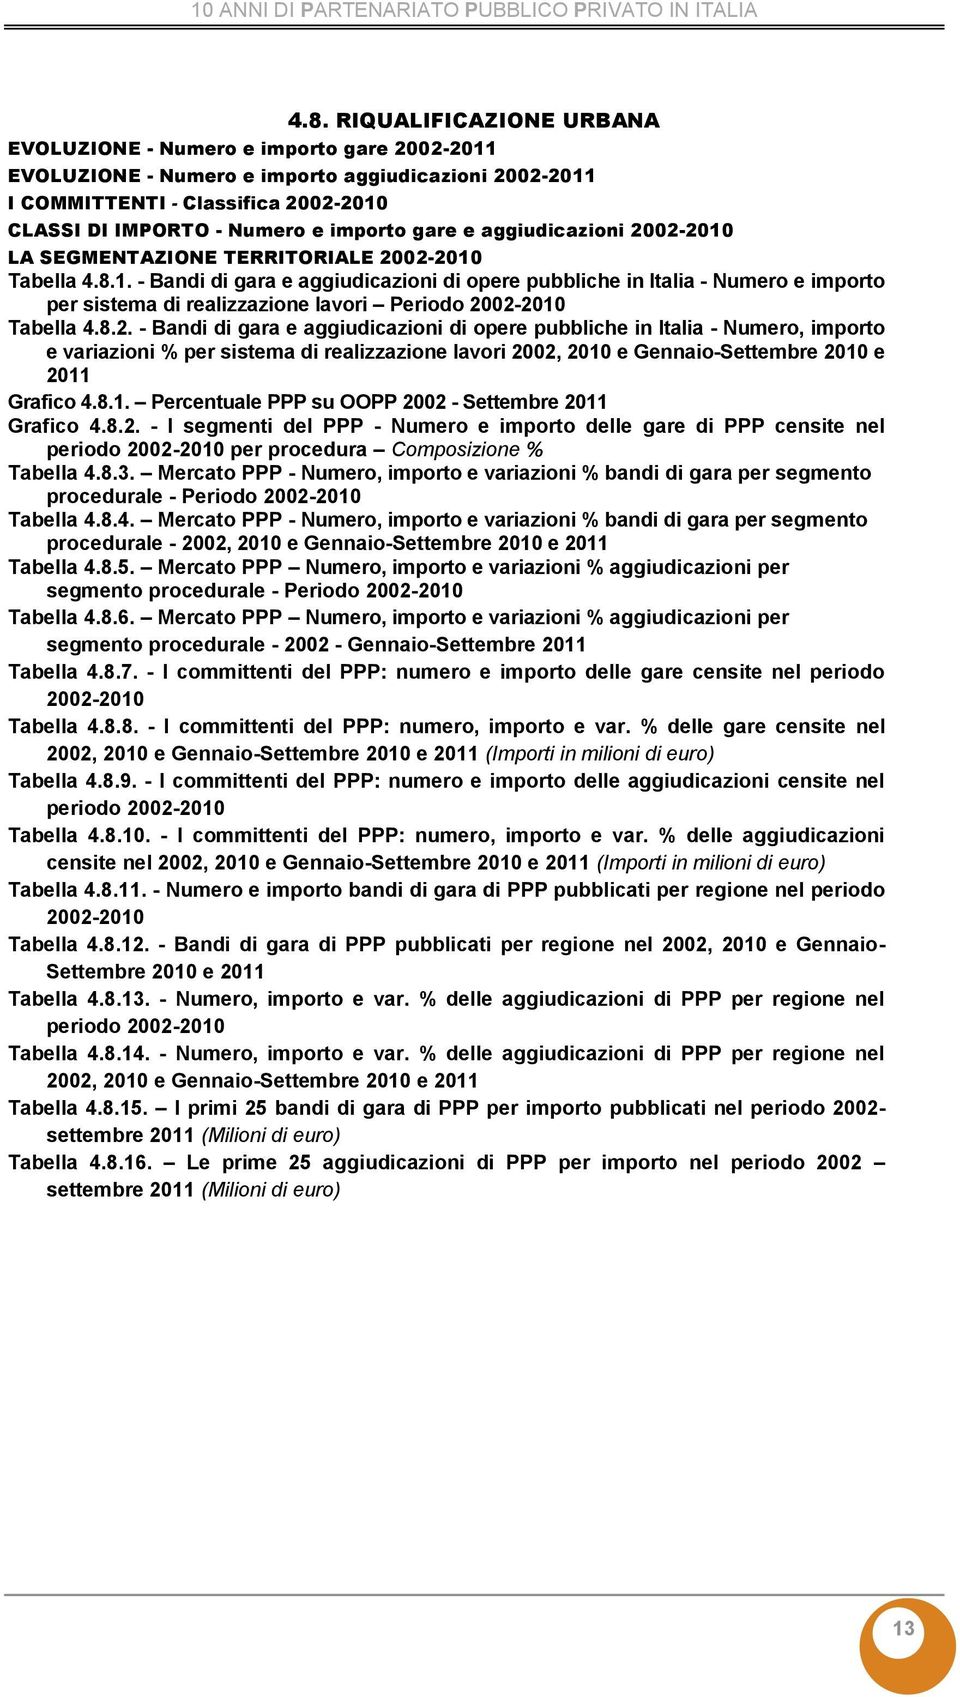 - Bandi di gara e aggiudicazioni di opere pubbliche in Italia - Numero, importo Grafico 4.8.1. Percentuale PPP su OOPP 20